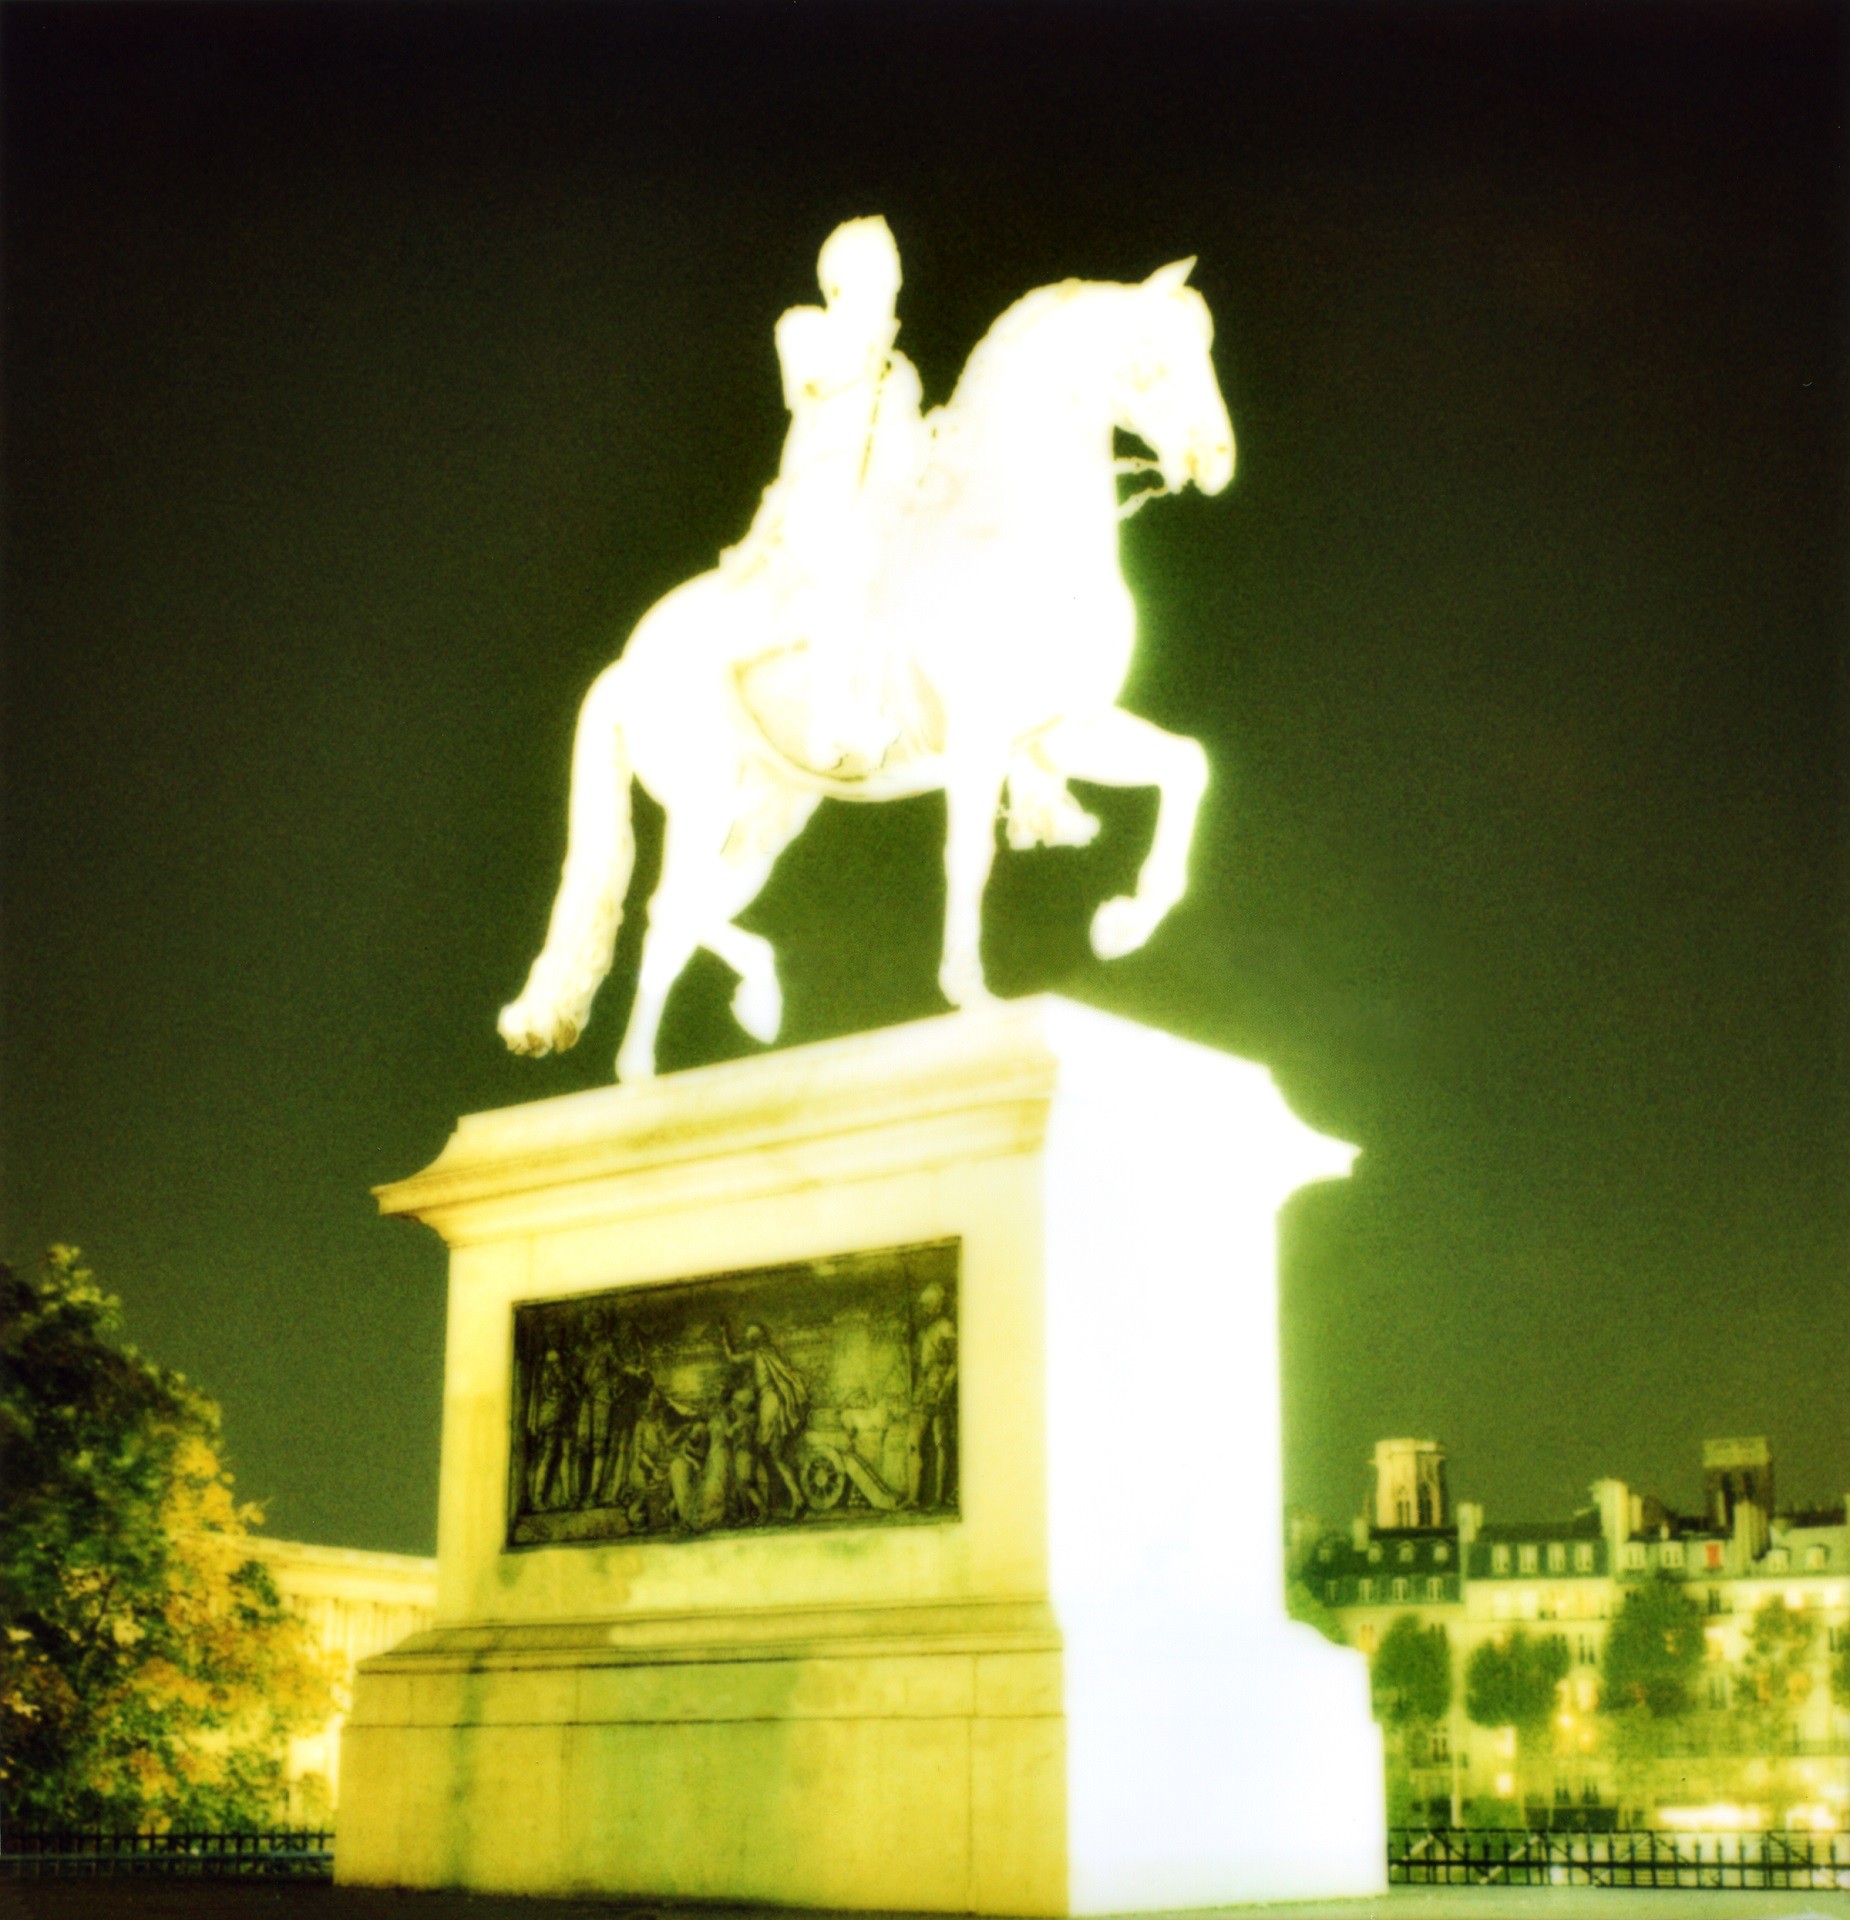 Photographie de la statue d'Henri IV sur un pont de Paris, surexposée pour apparaître telle une lumière dans la nuit.